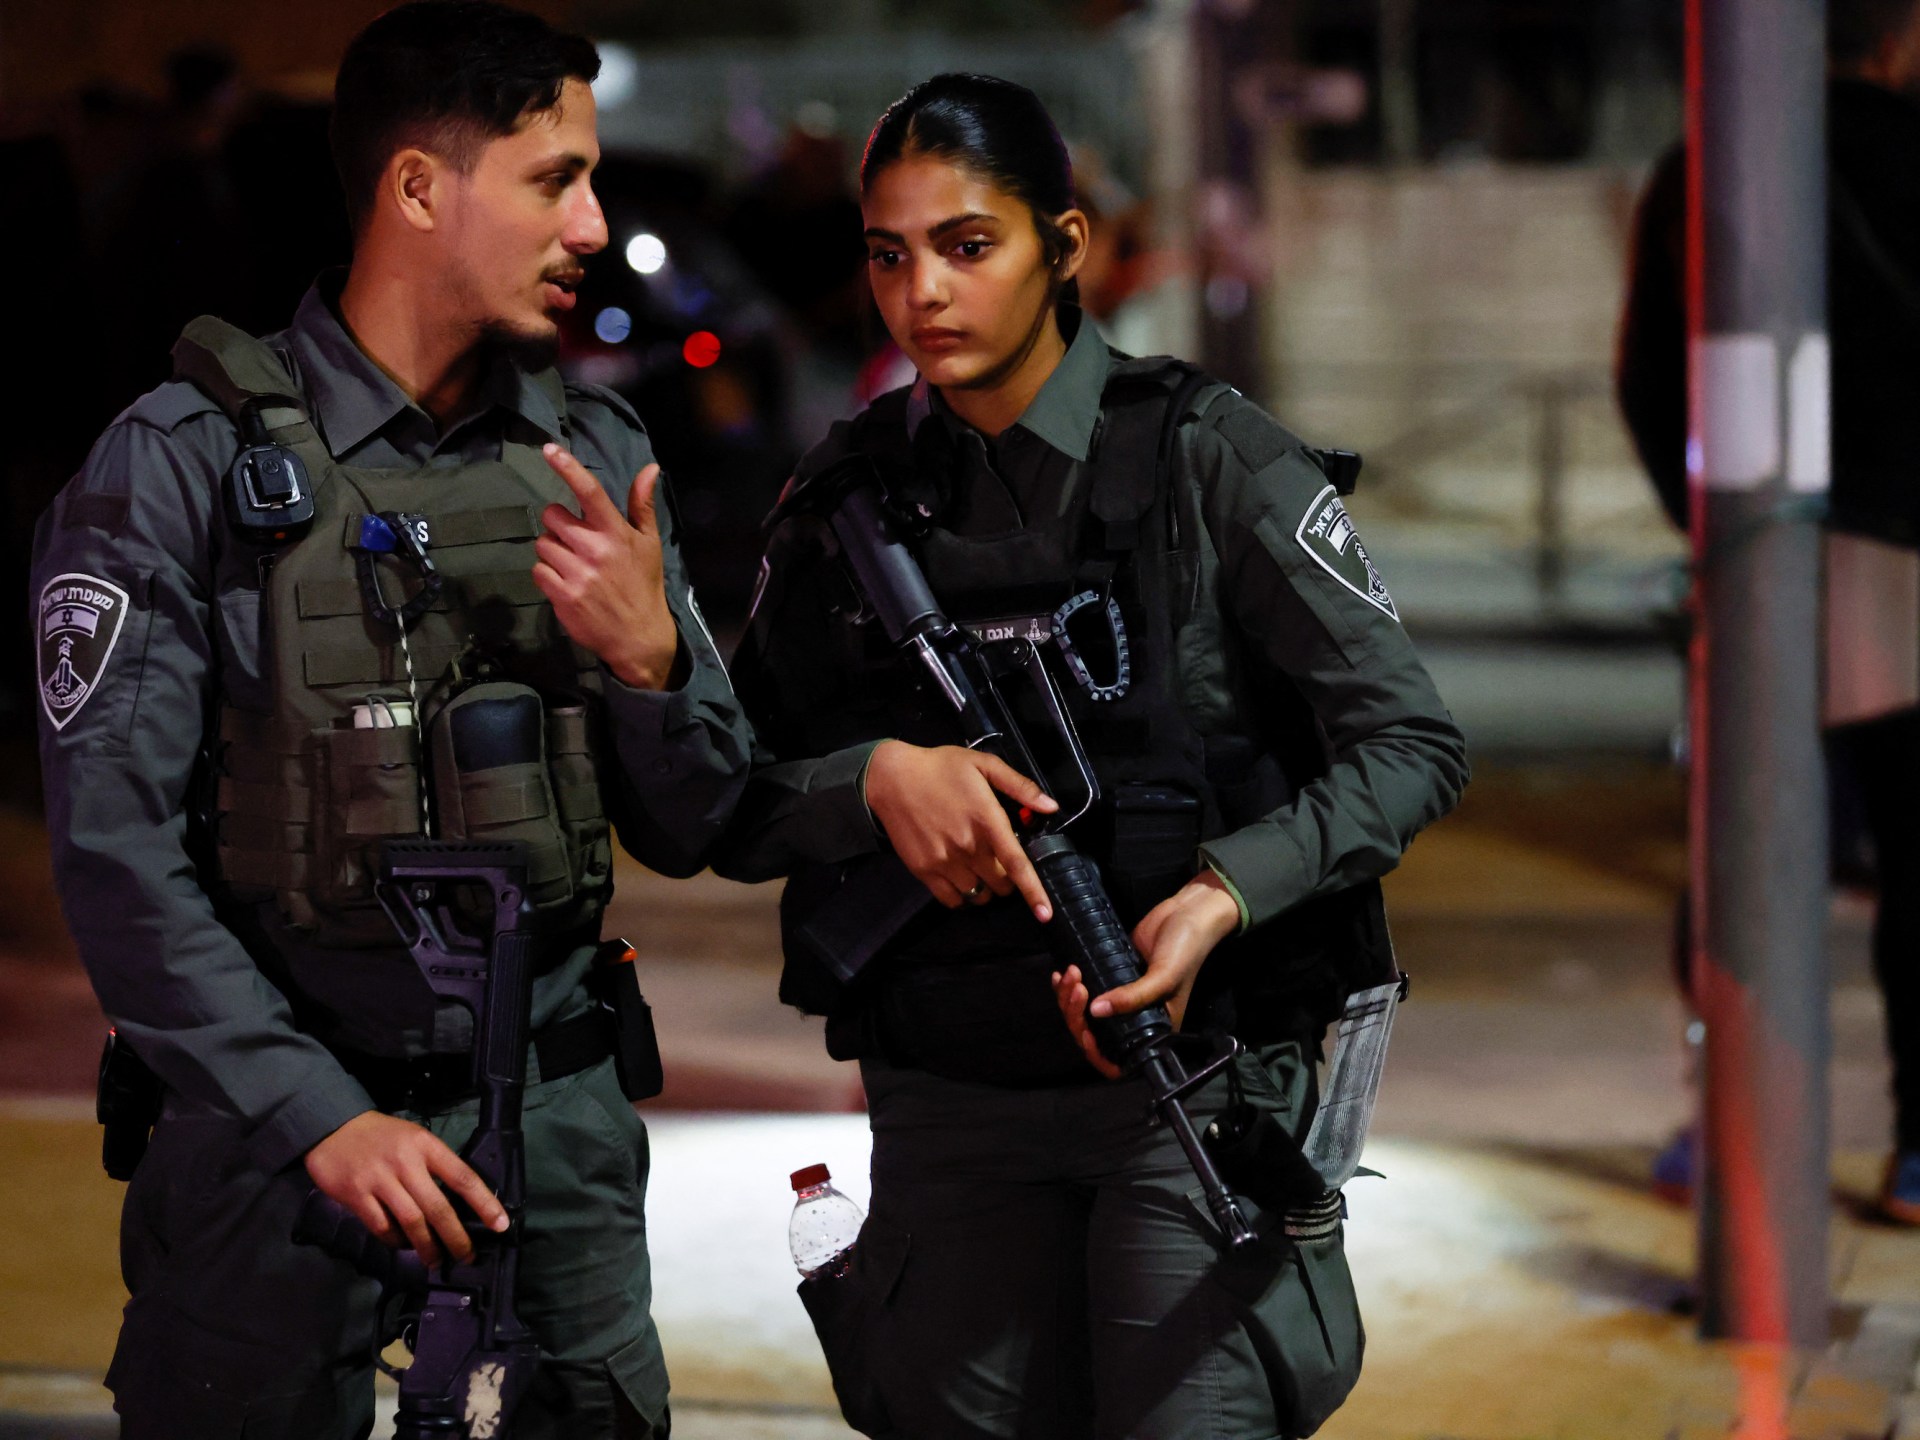 Two Israelis injured in occupied East Jerusalem shooting